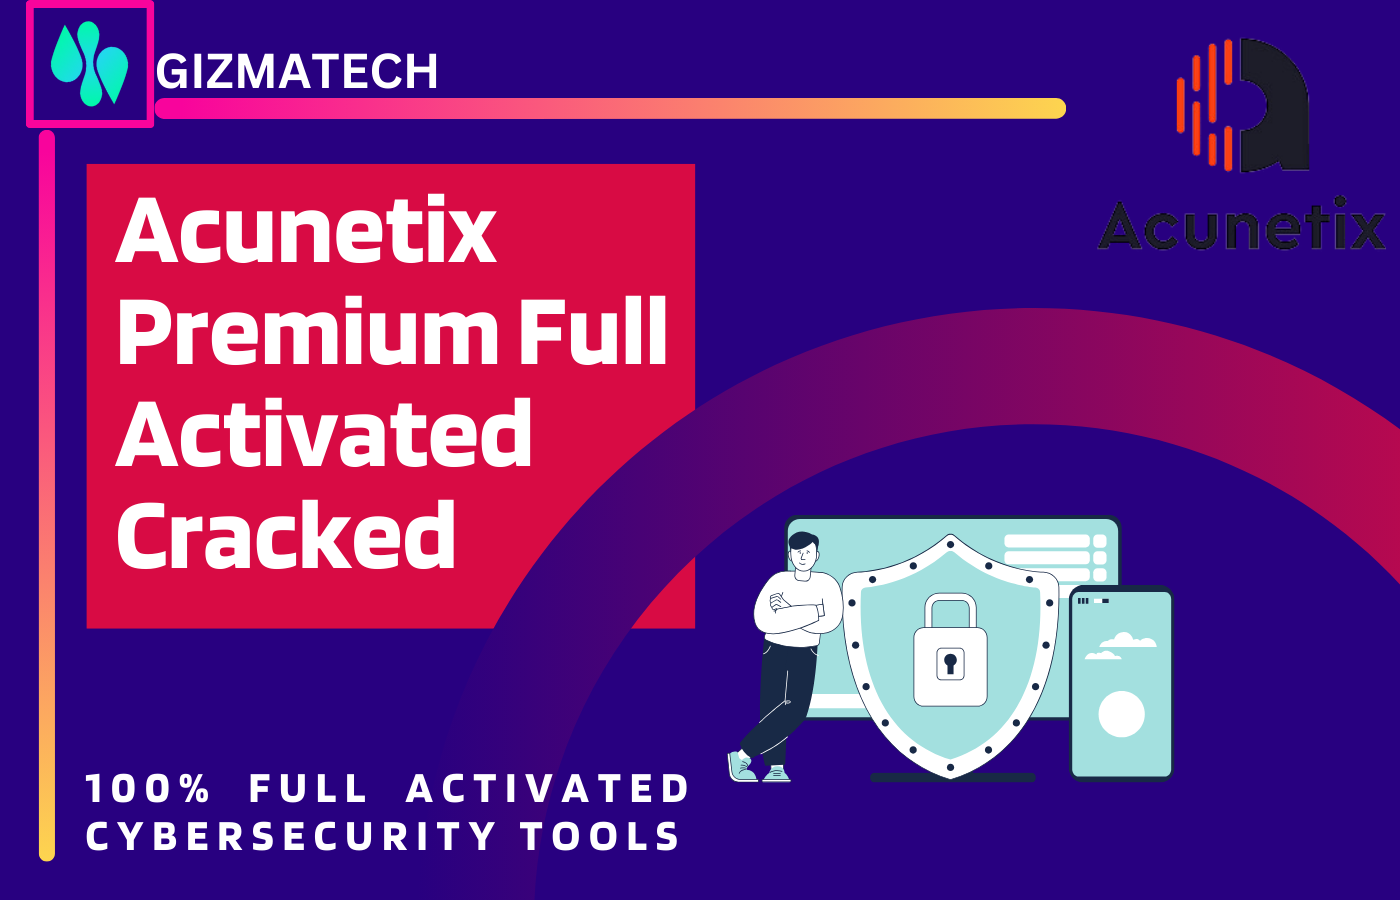 Acunetix Premium Full Activated Cracked